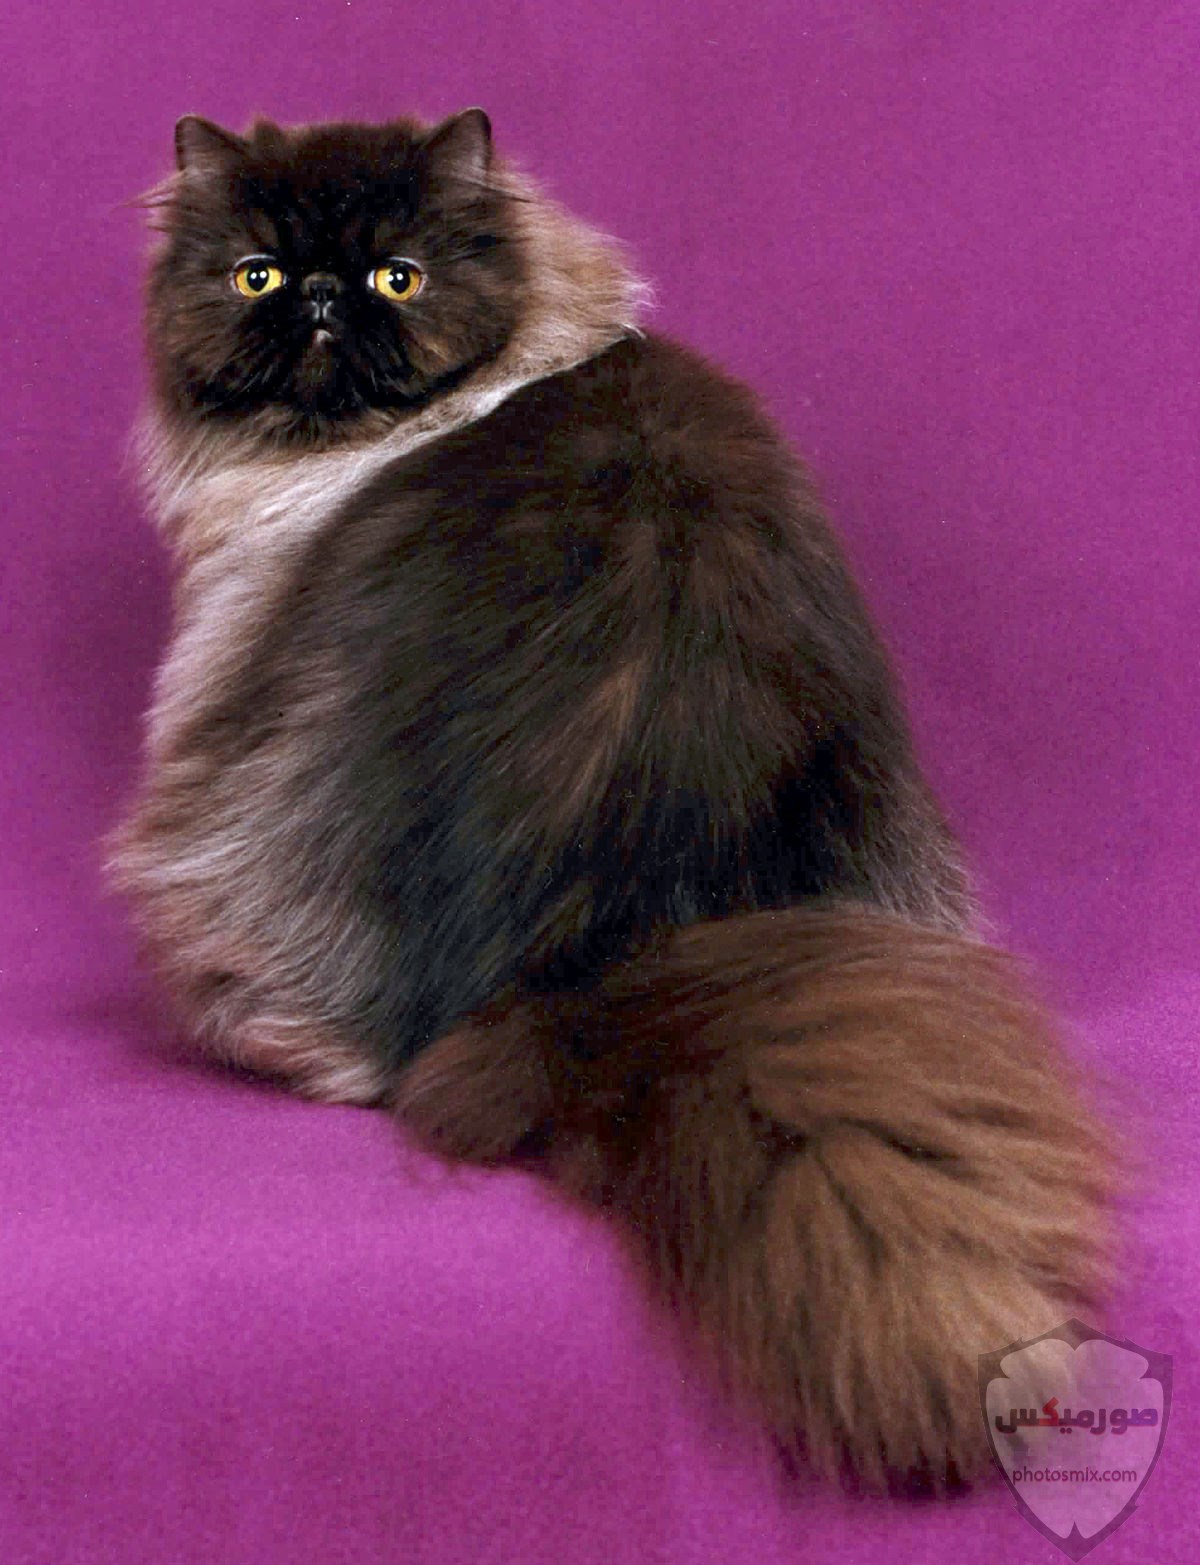 صور خلفيات رمزيات قطط كيوت صورة قطة كيوت جدا 54